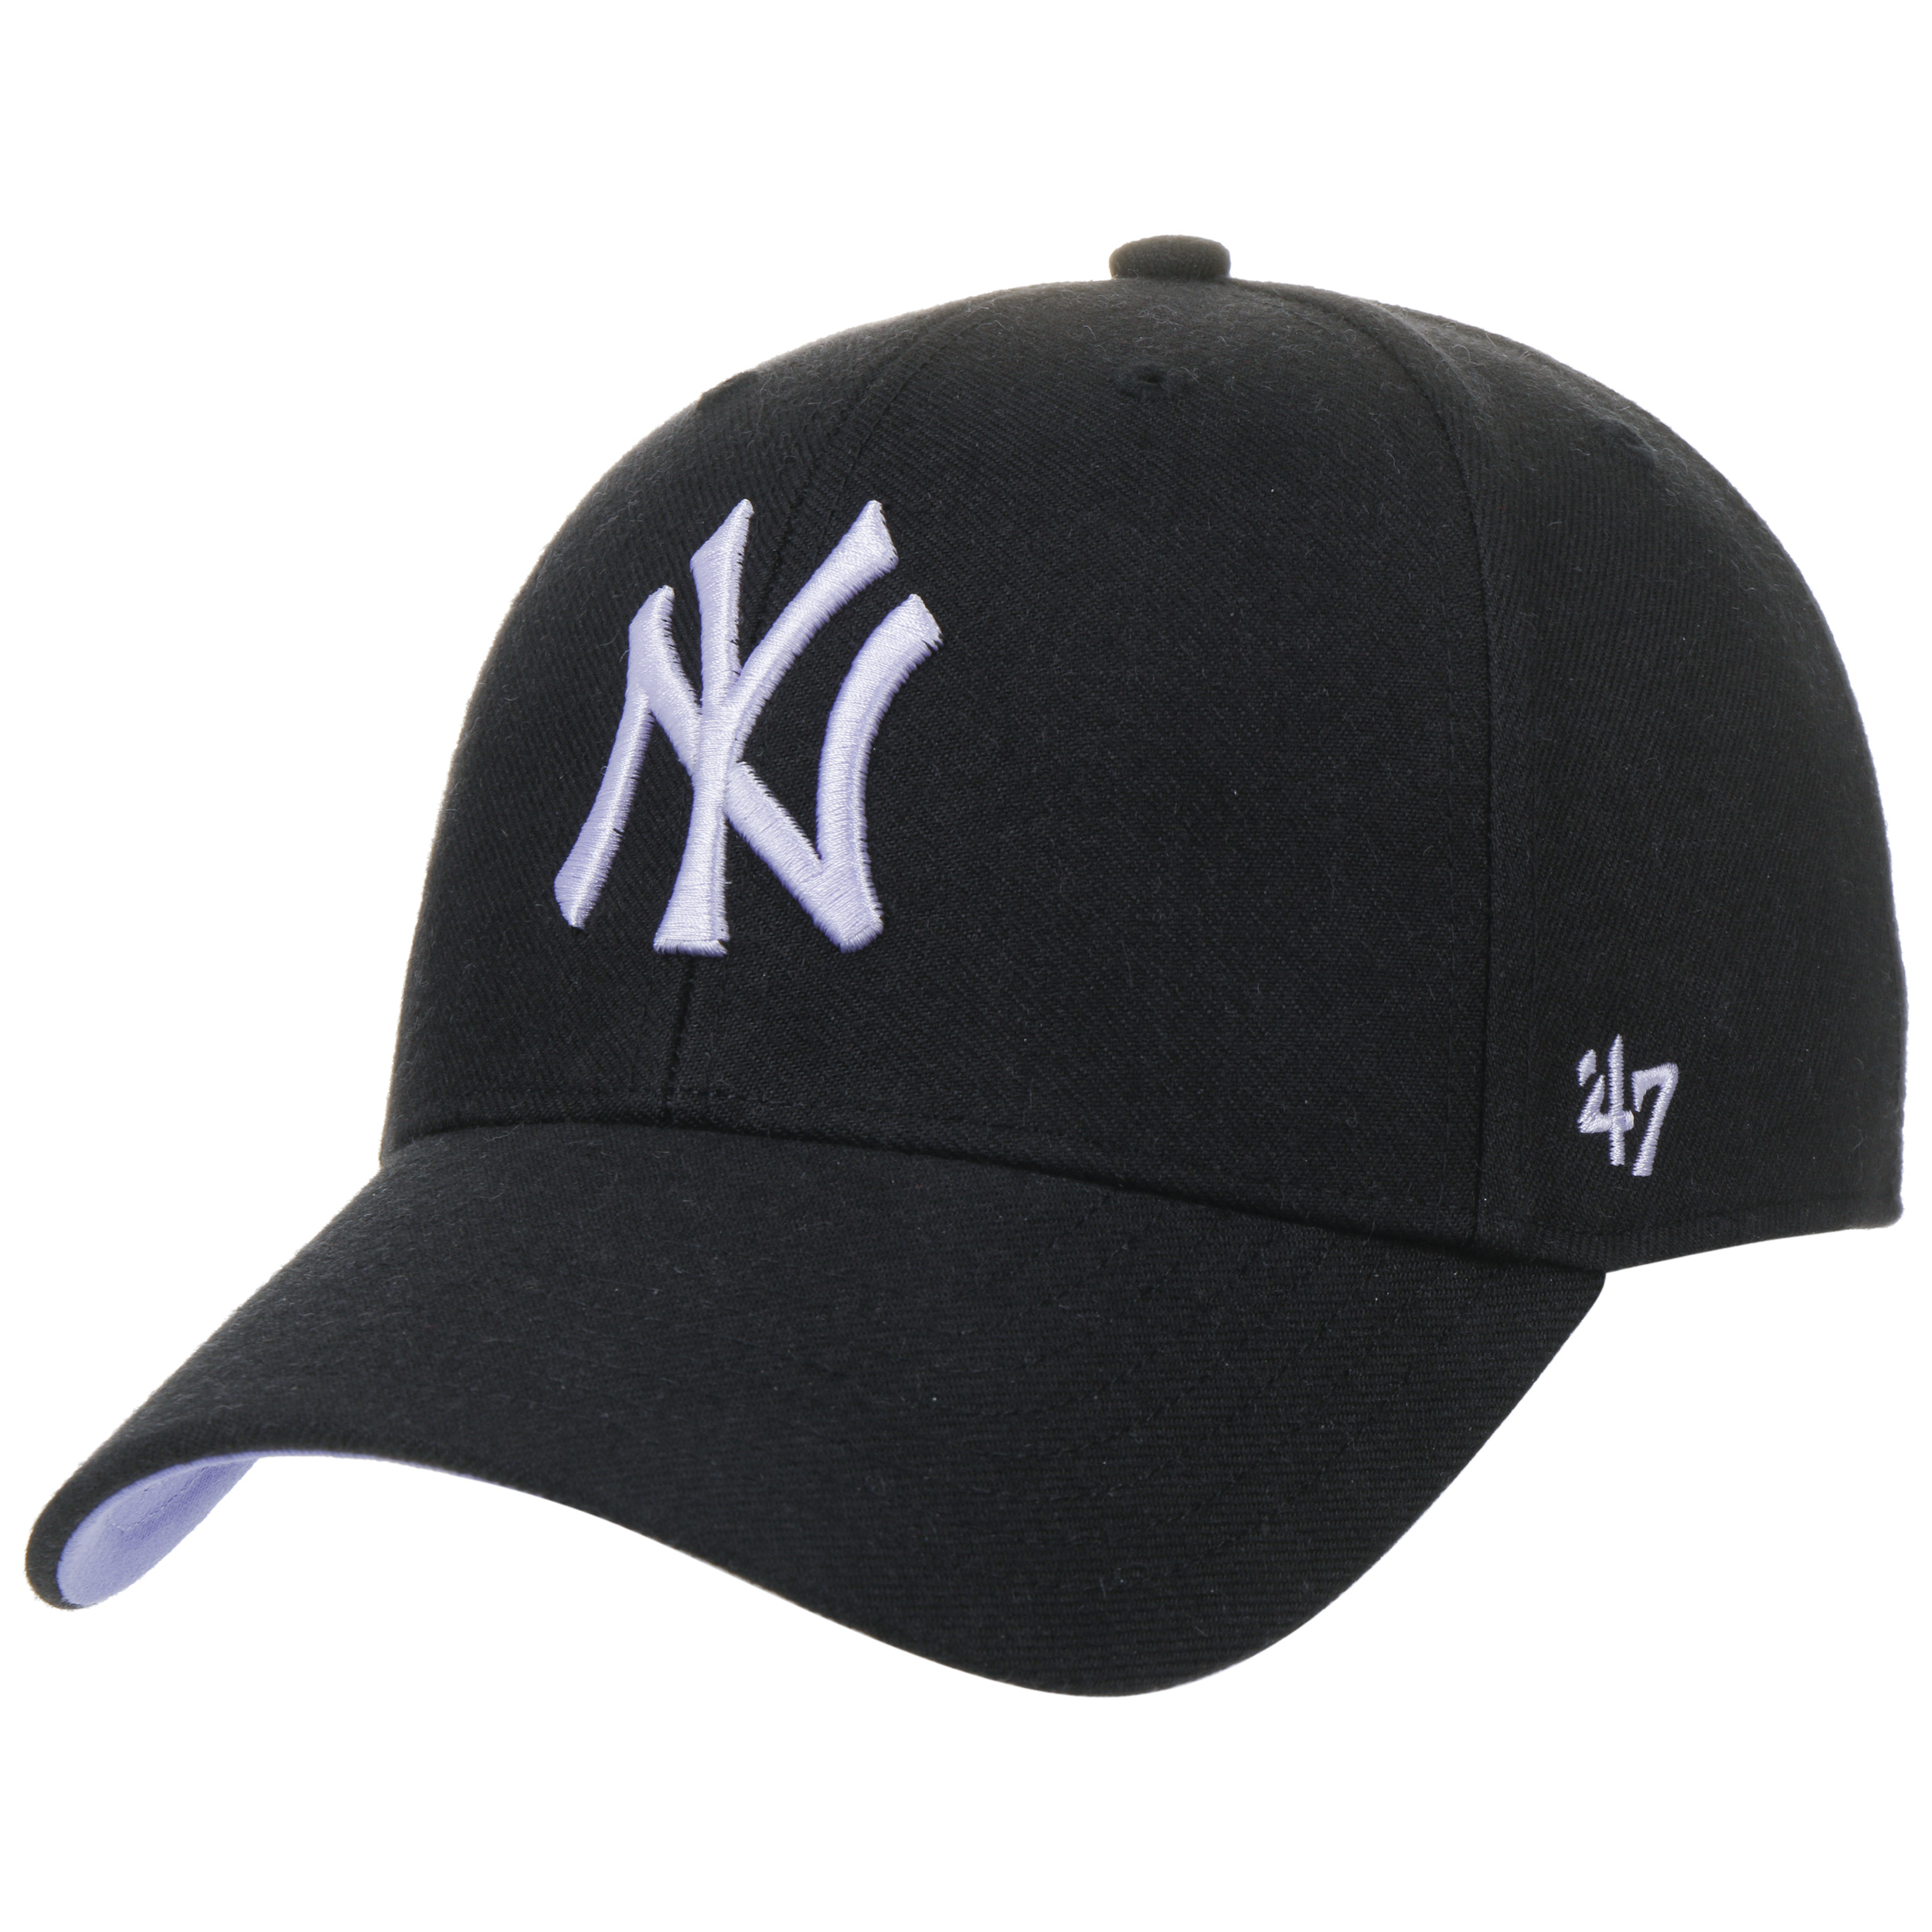 MLB NY Ballpark Snapback Cap by 47 Brand